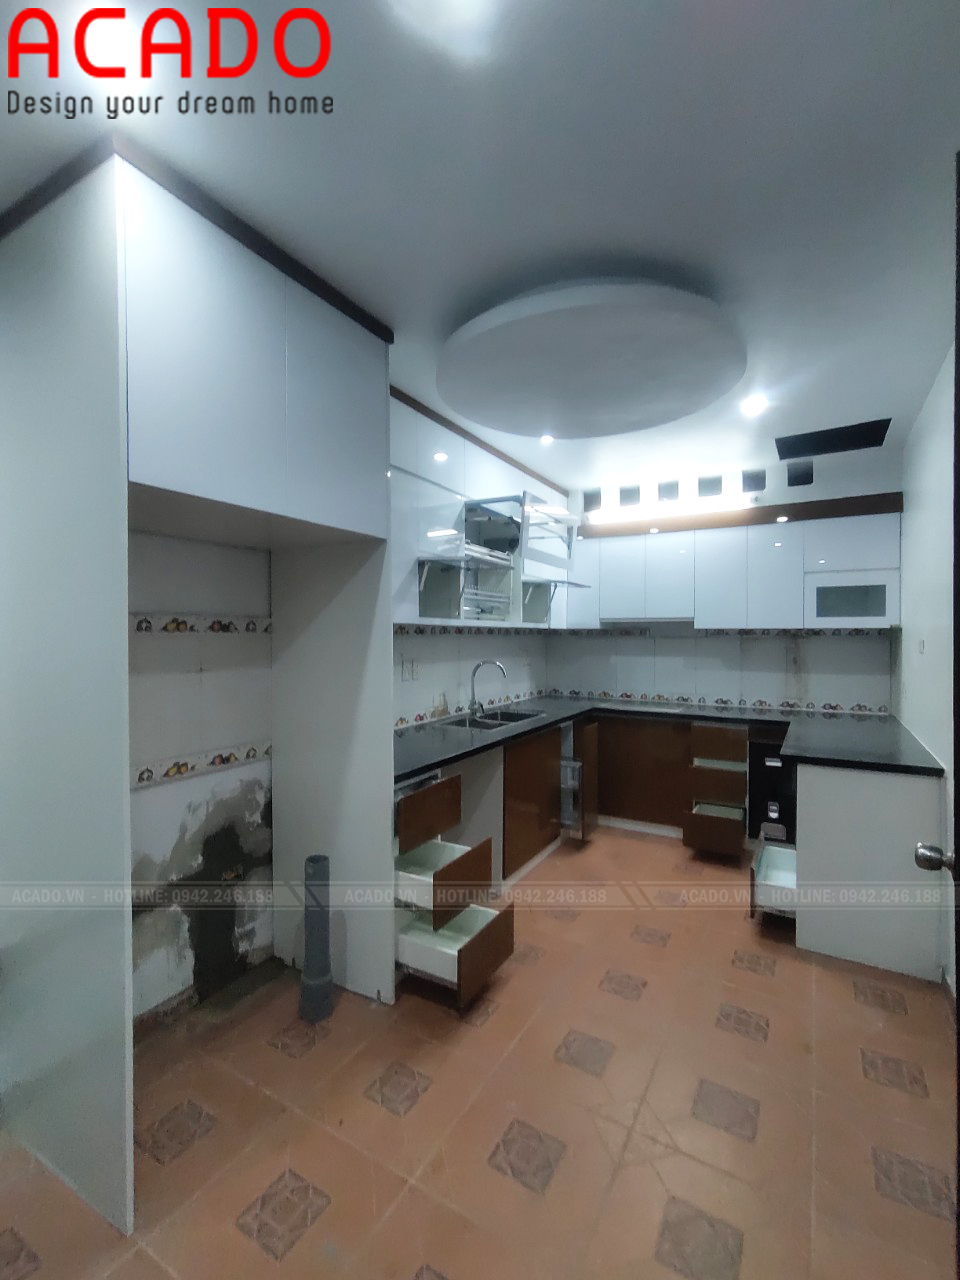 Thiết kế phù hợp với không gian bếp, thuận tiện khi sử dụng